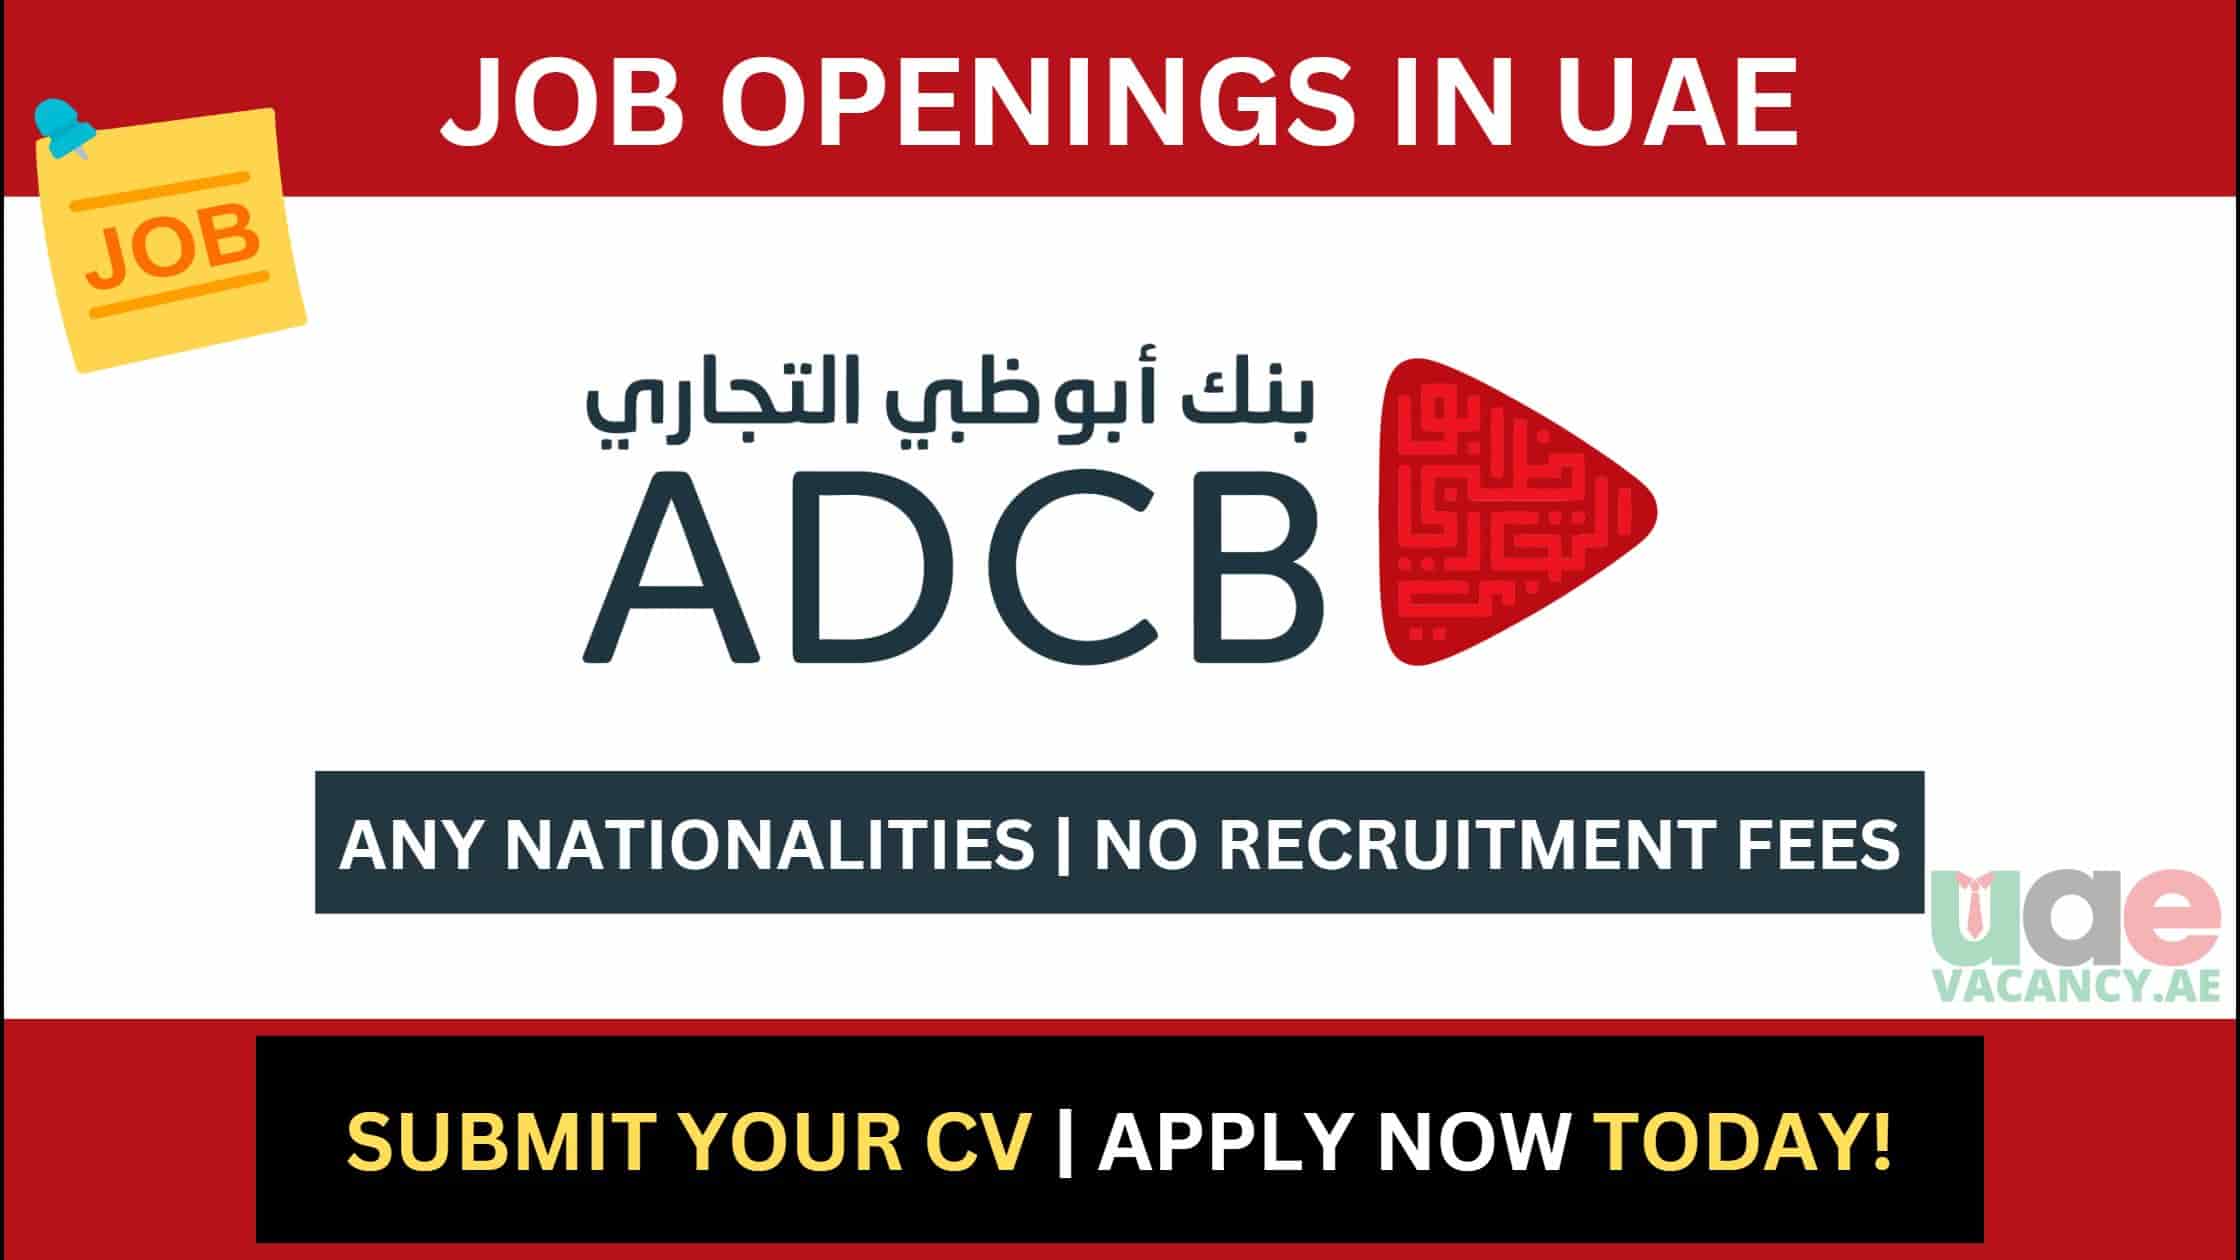 ADCB Careers in UAE